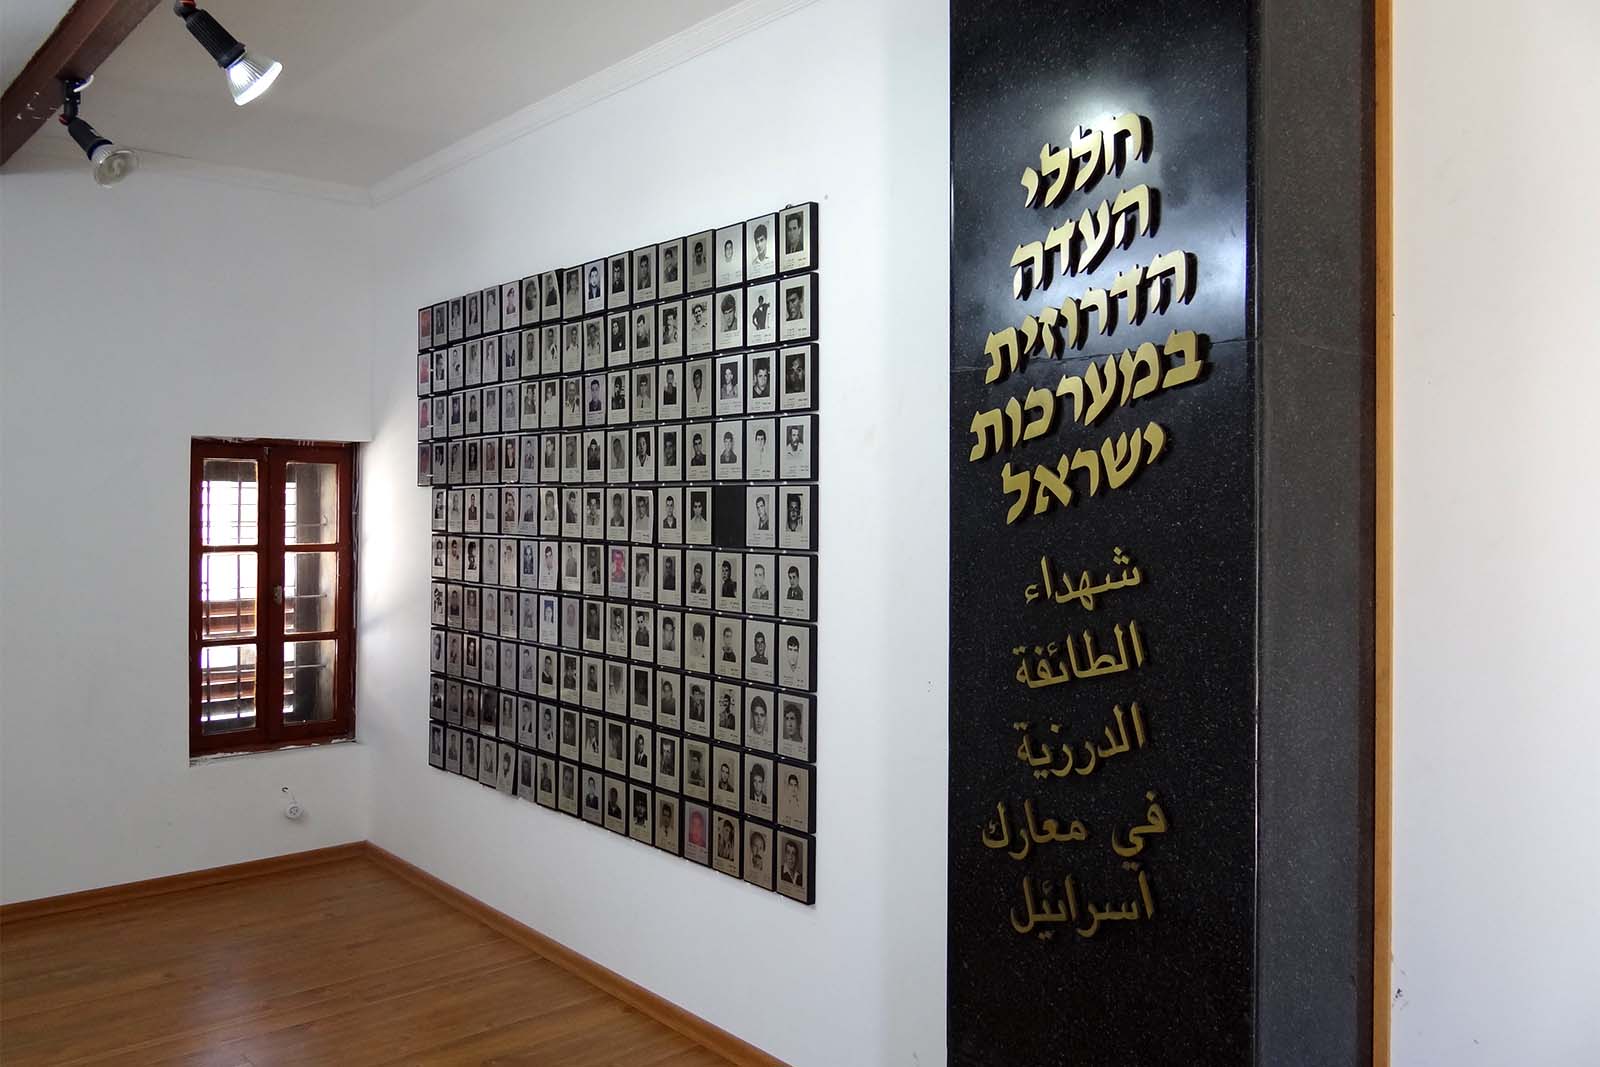 חדר הנצחת החללים הדרוזים במלחמות ישראל בבית אוליפנט בדלית אל-כרמל (צילום: Hanay/ויקימדיה)